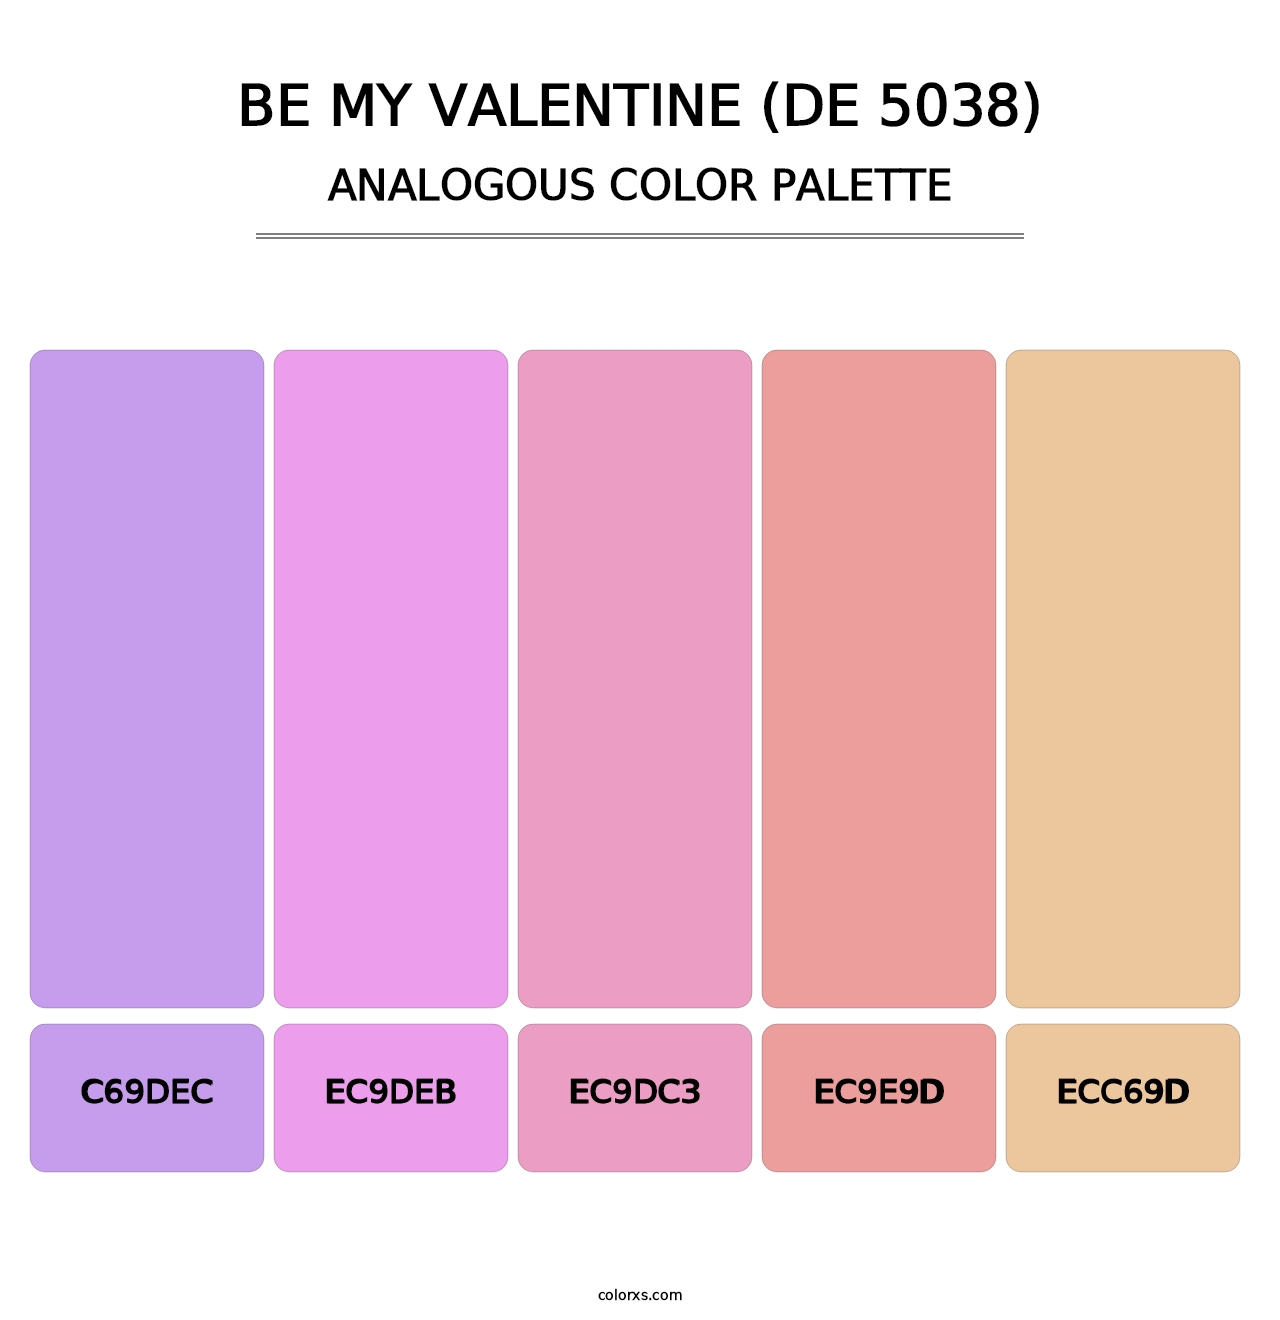 Be My Valentine (DE 5038) - Analogous Color Palette